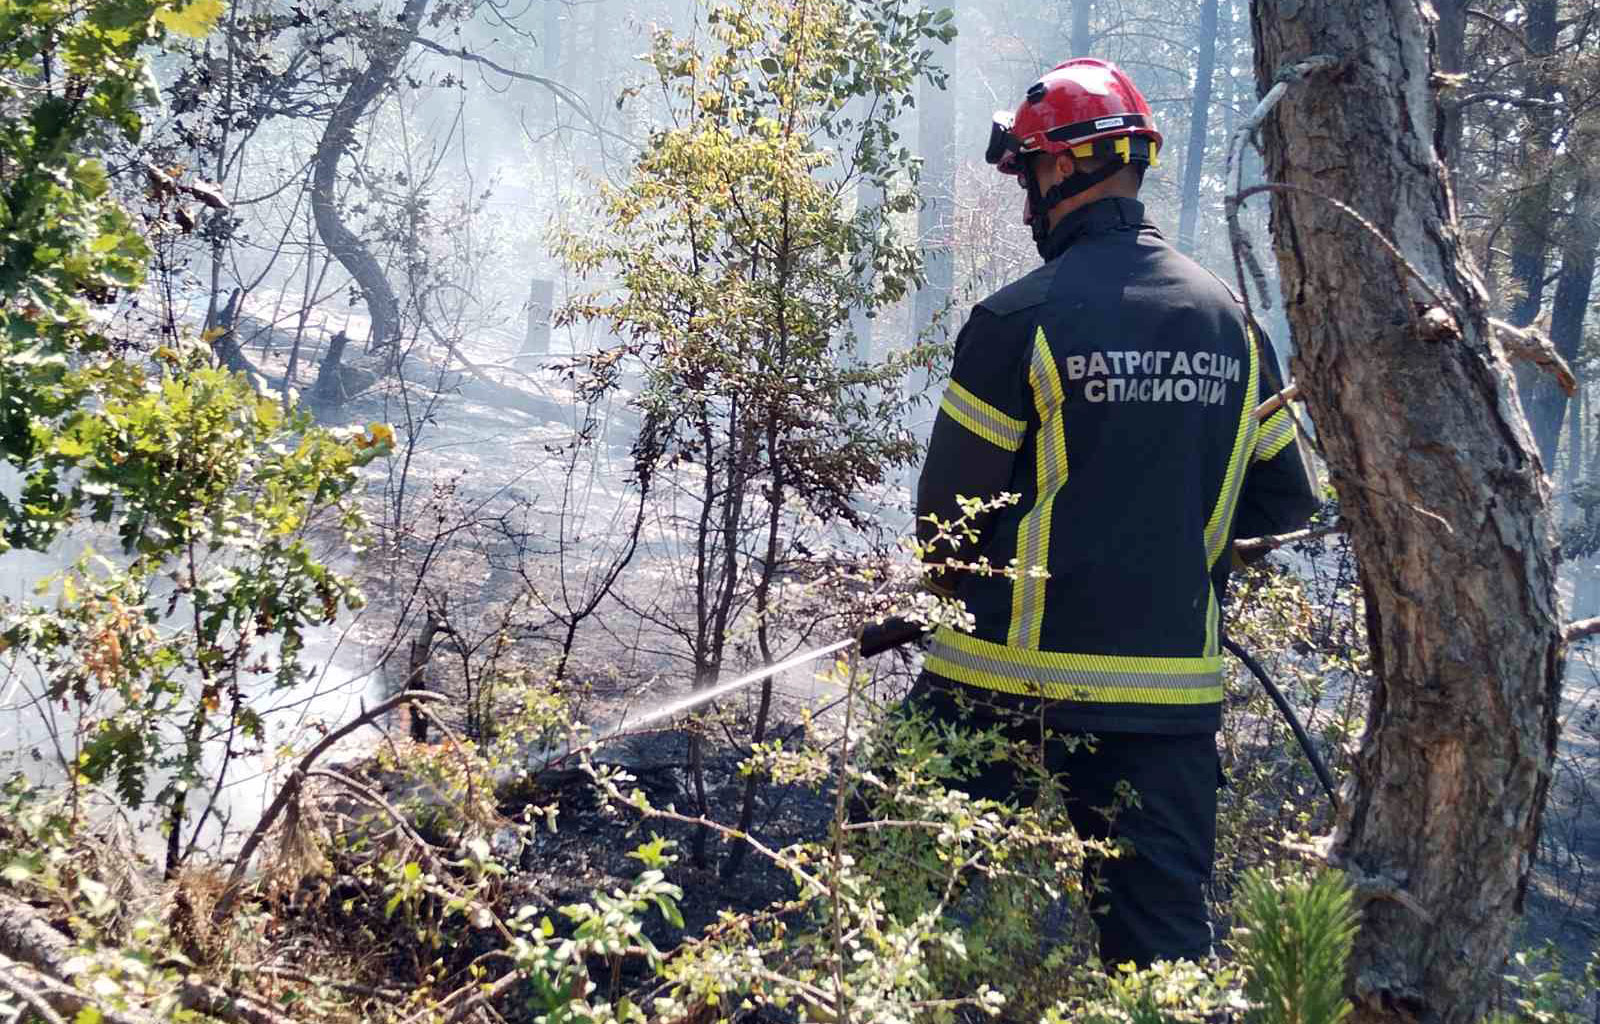 Požar koji je juče popodne izbio u mestu Pavlјe, kod Novog Pazara, stavlјen je pod kontrolu